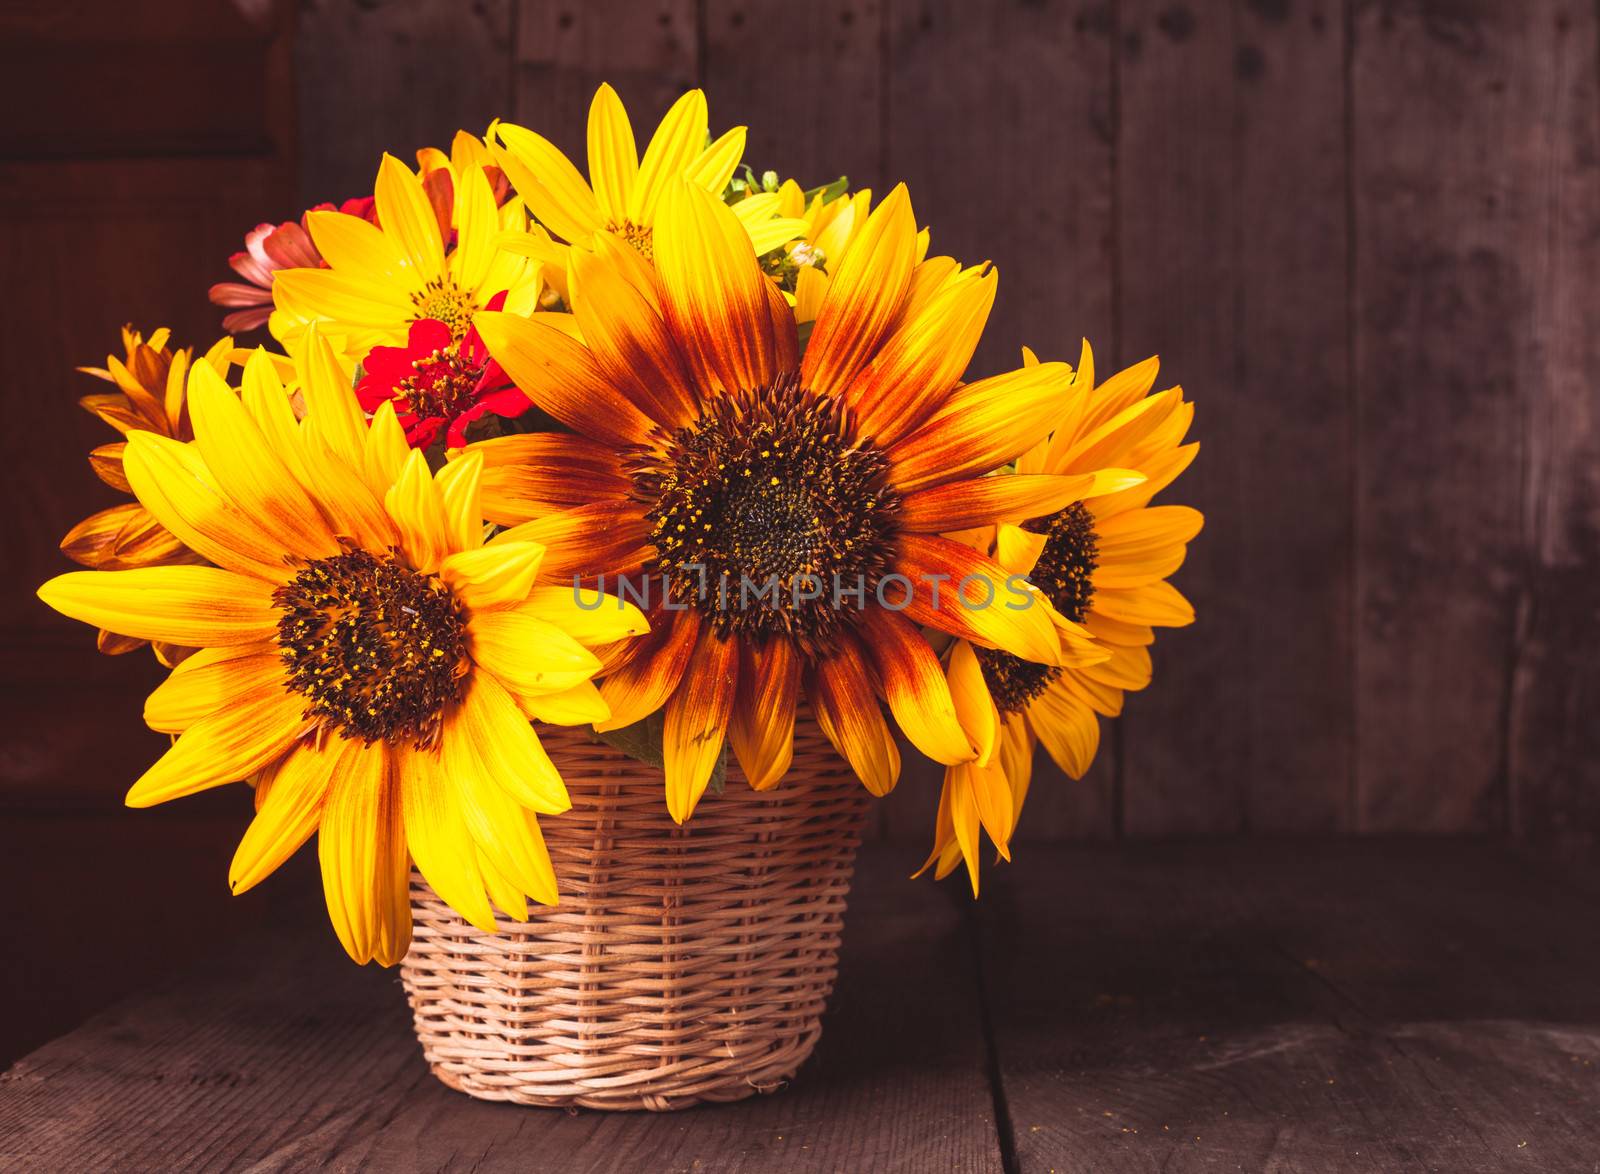 sunflowers in basket by oksix